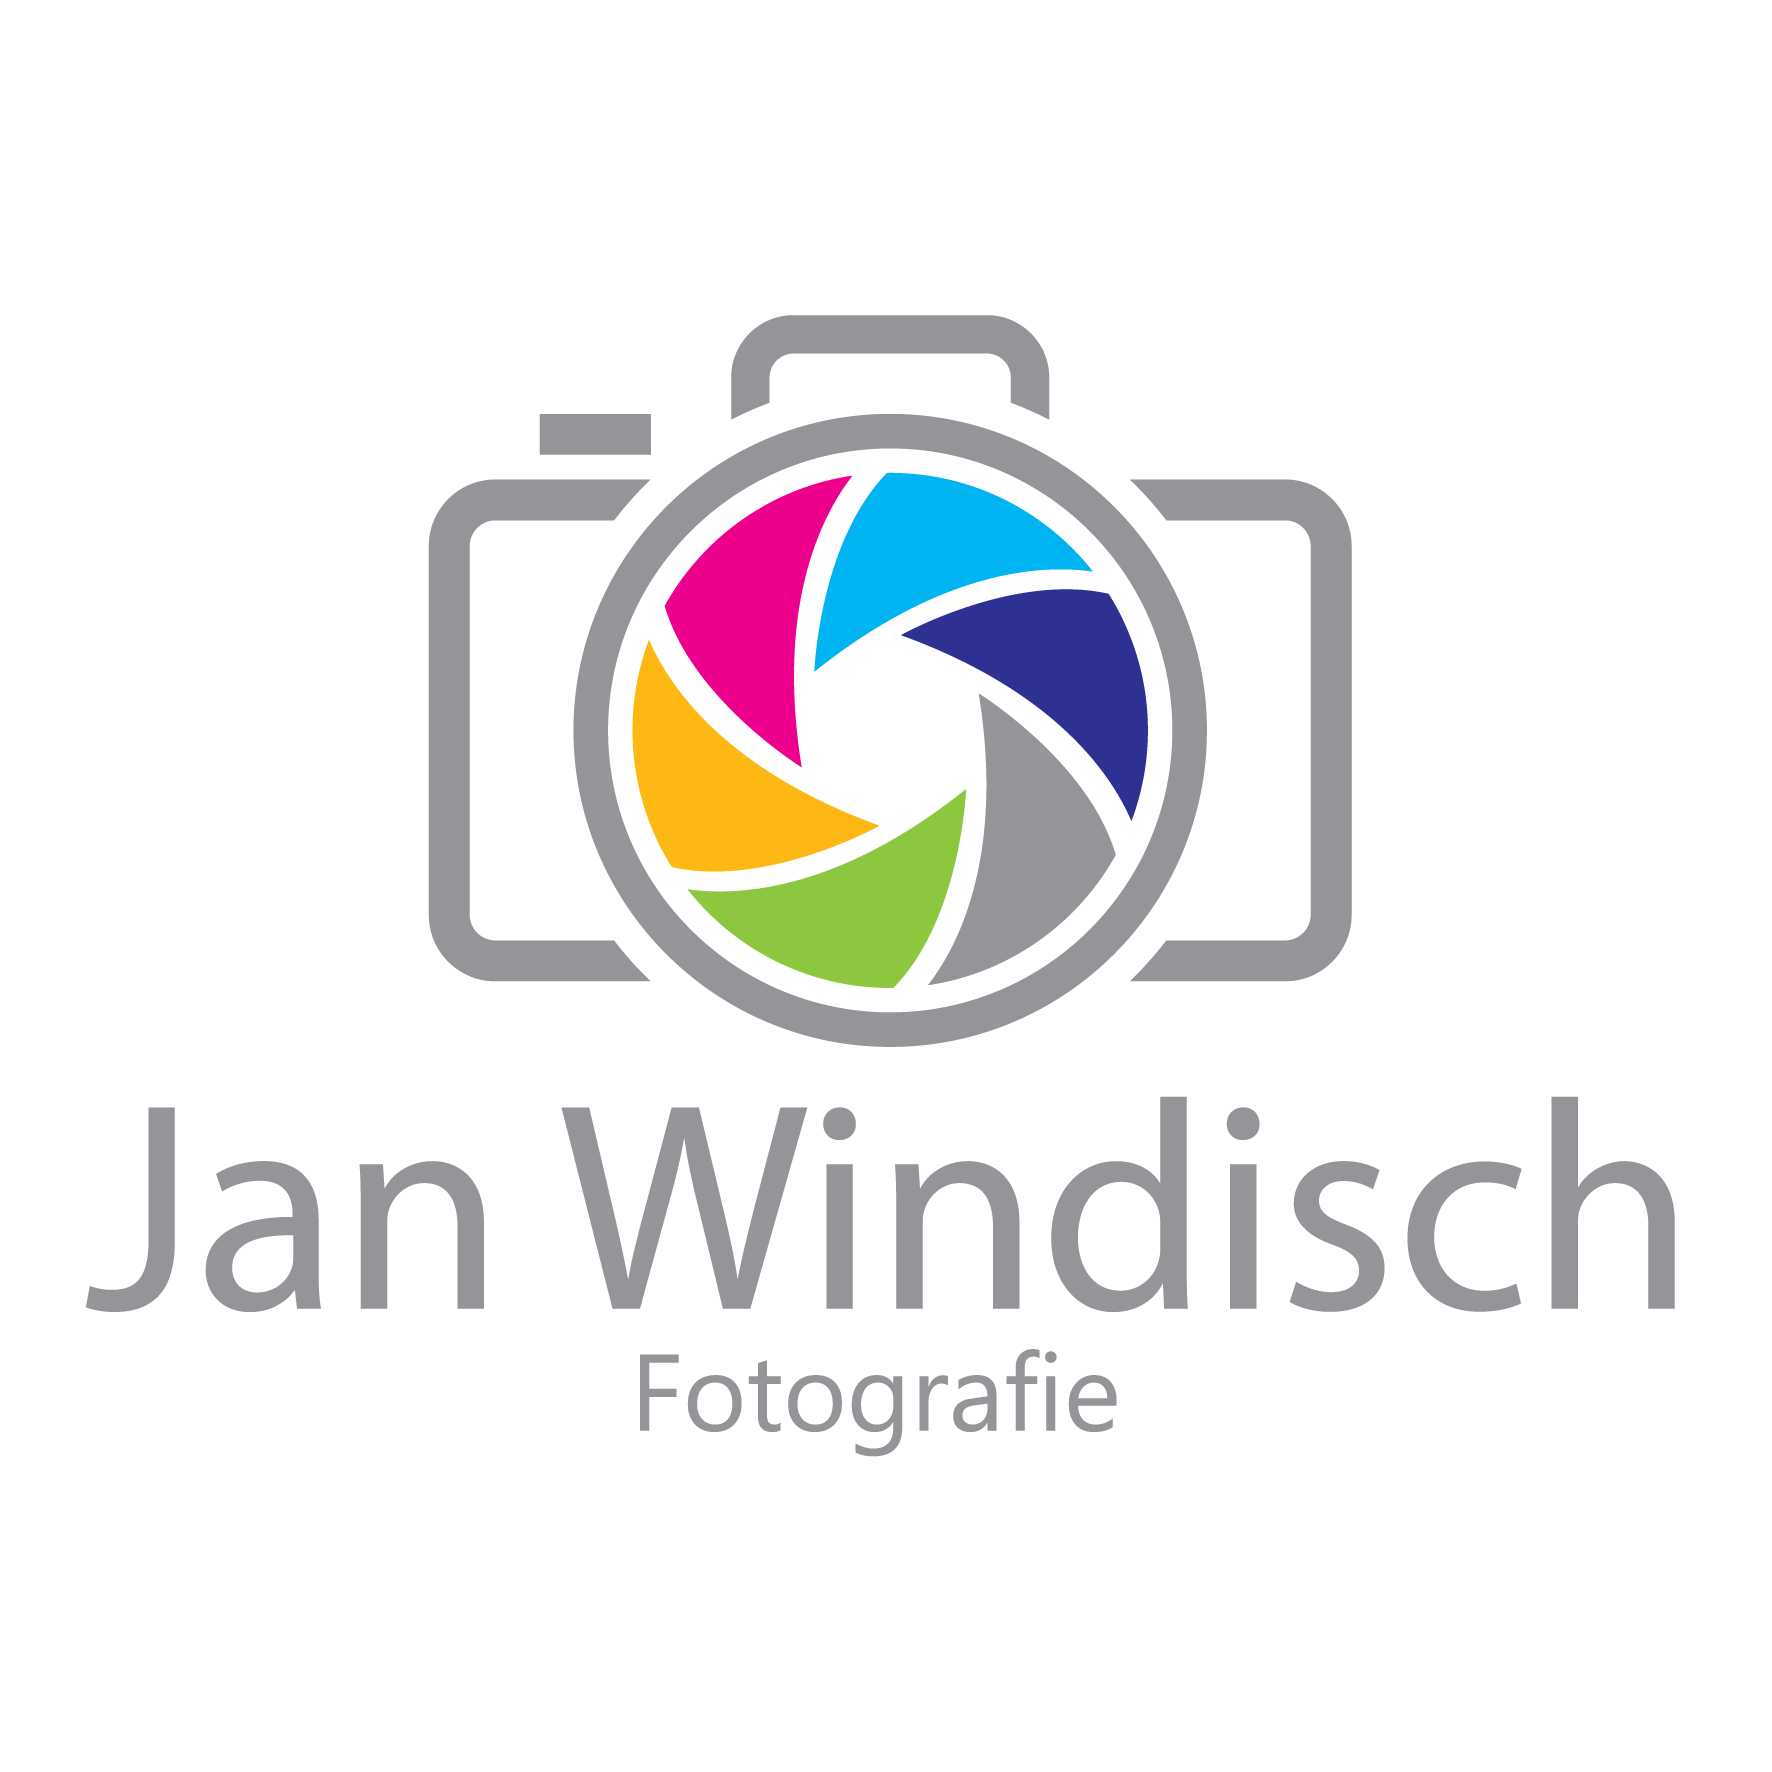 Jan Windisch Fotografie - Fotograf aus Dresden Logo